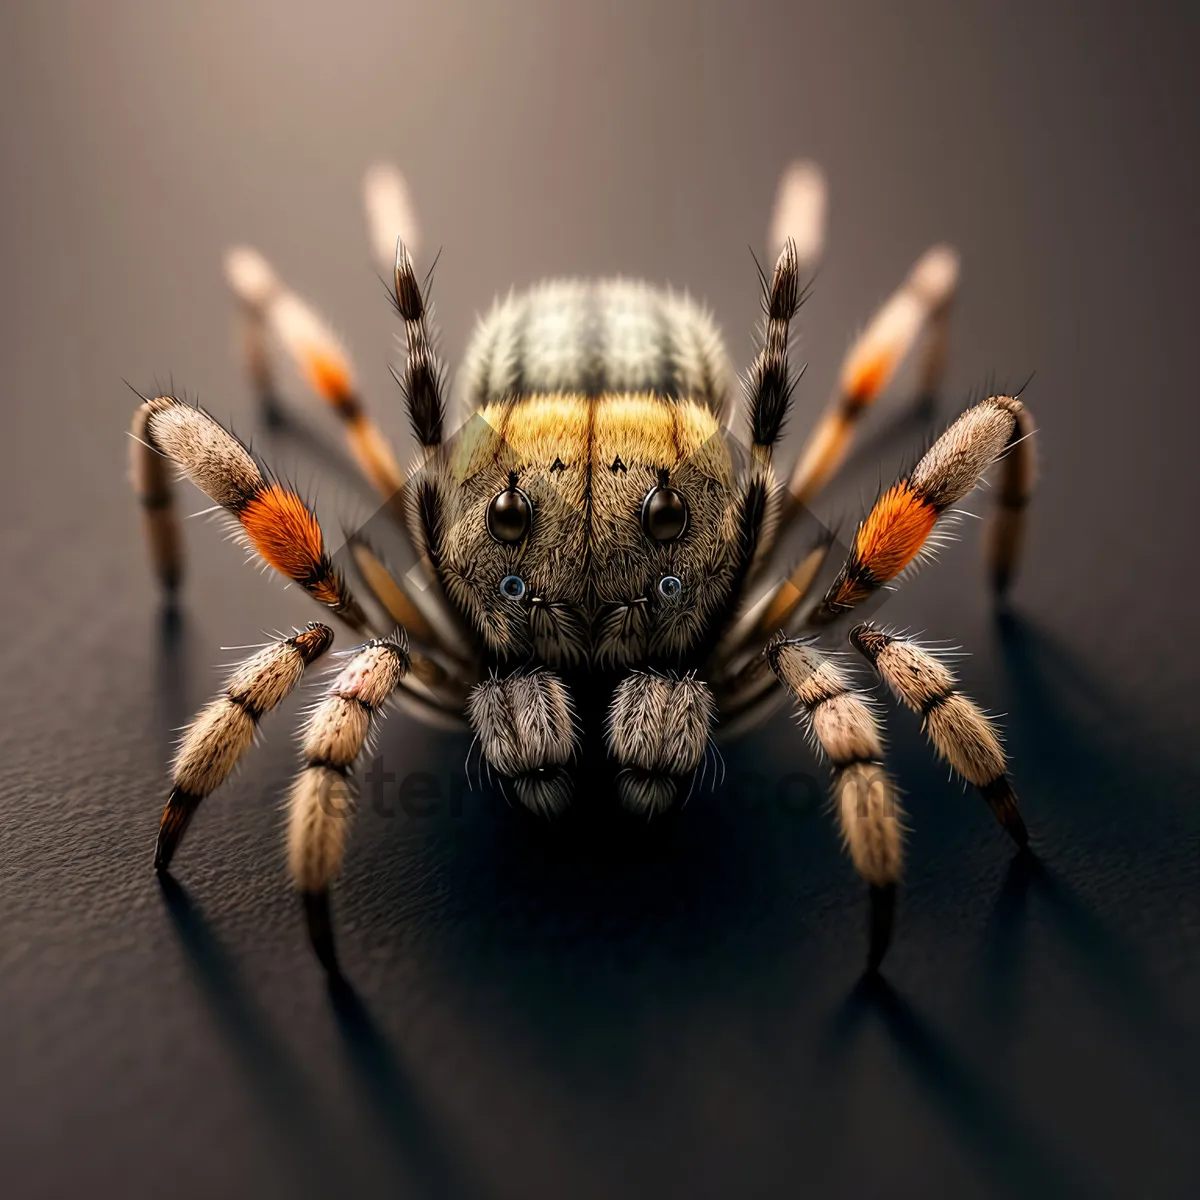 Picture of Wild Garden Spider: Hairy Arachnid Predator